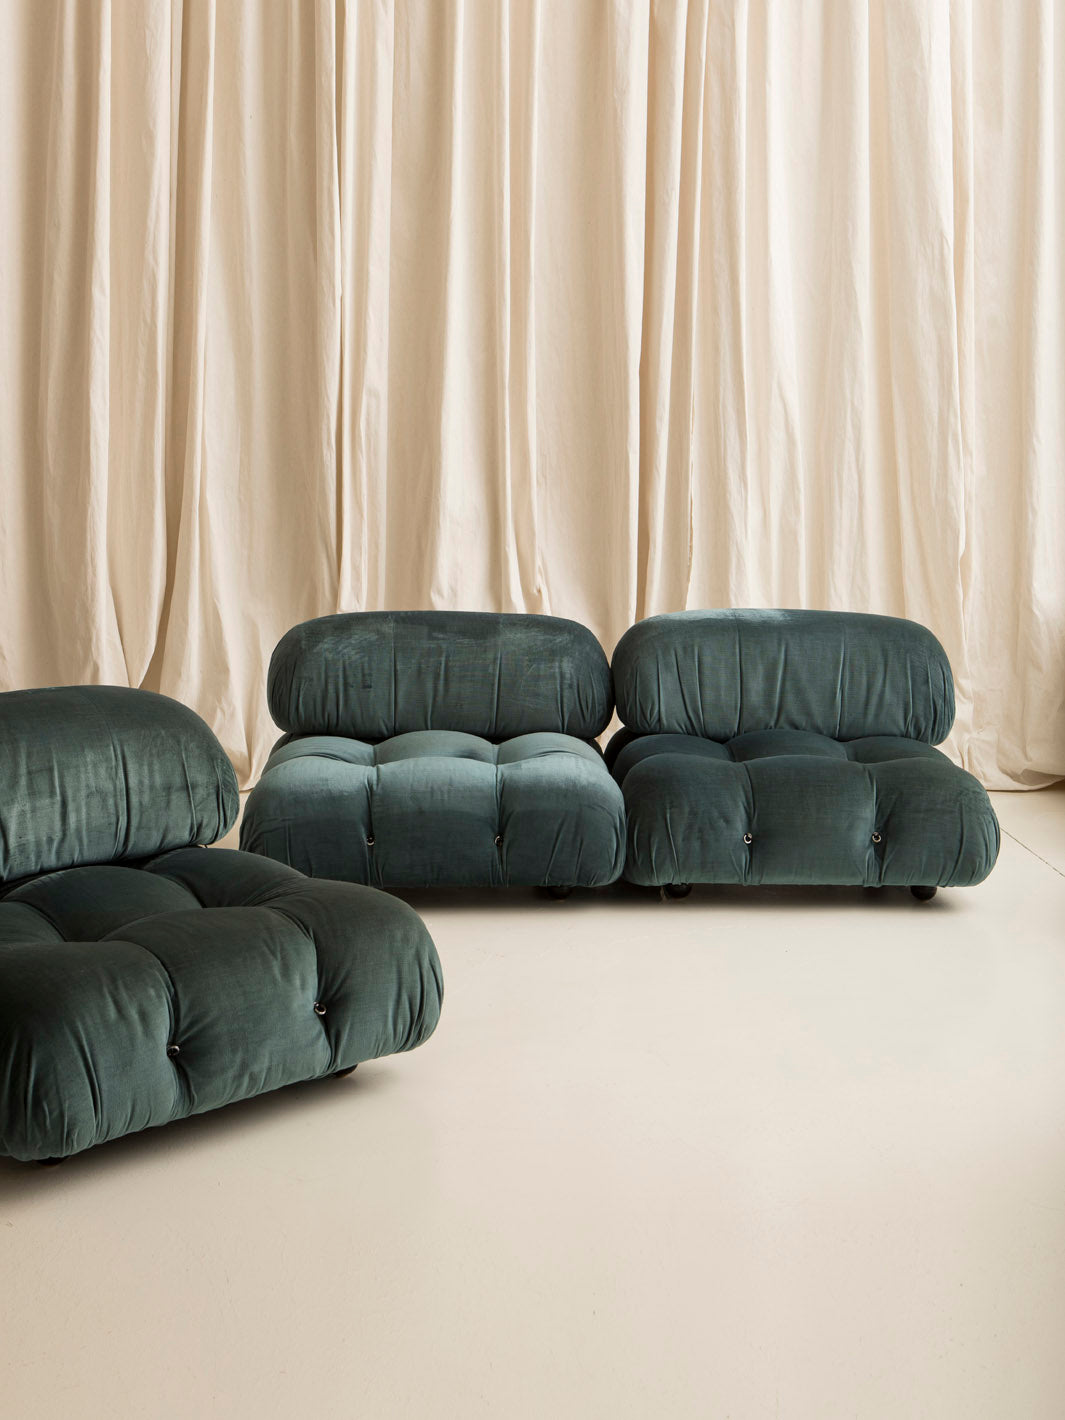 Camaleonda Modular Sofa by Mario Bellini